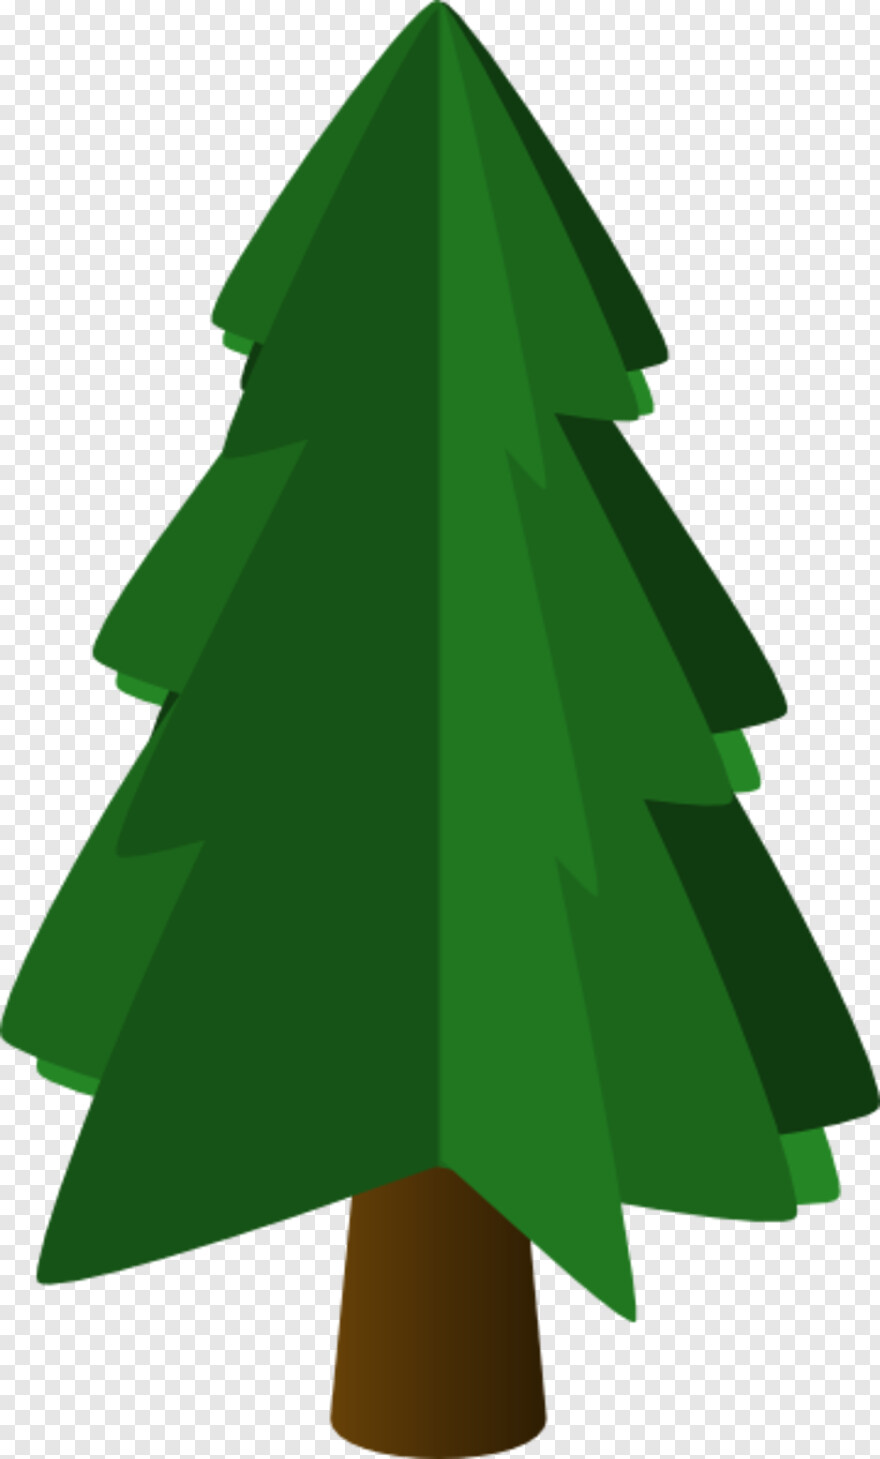 pine-tree-silhouette # 460167